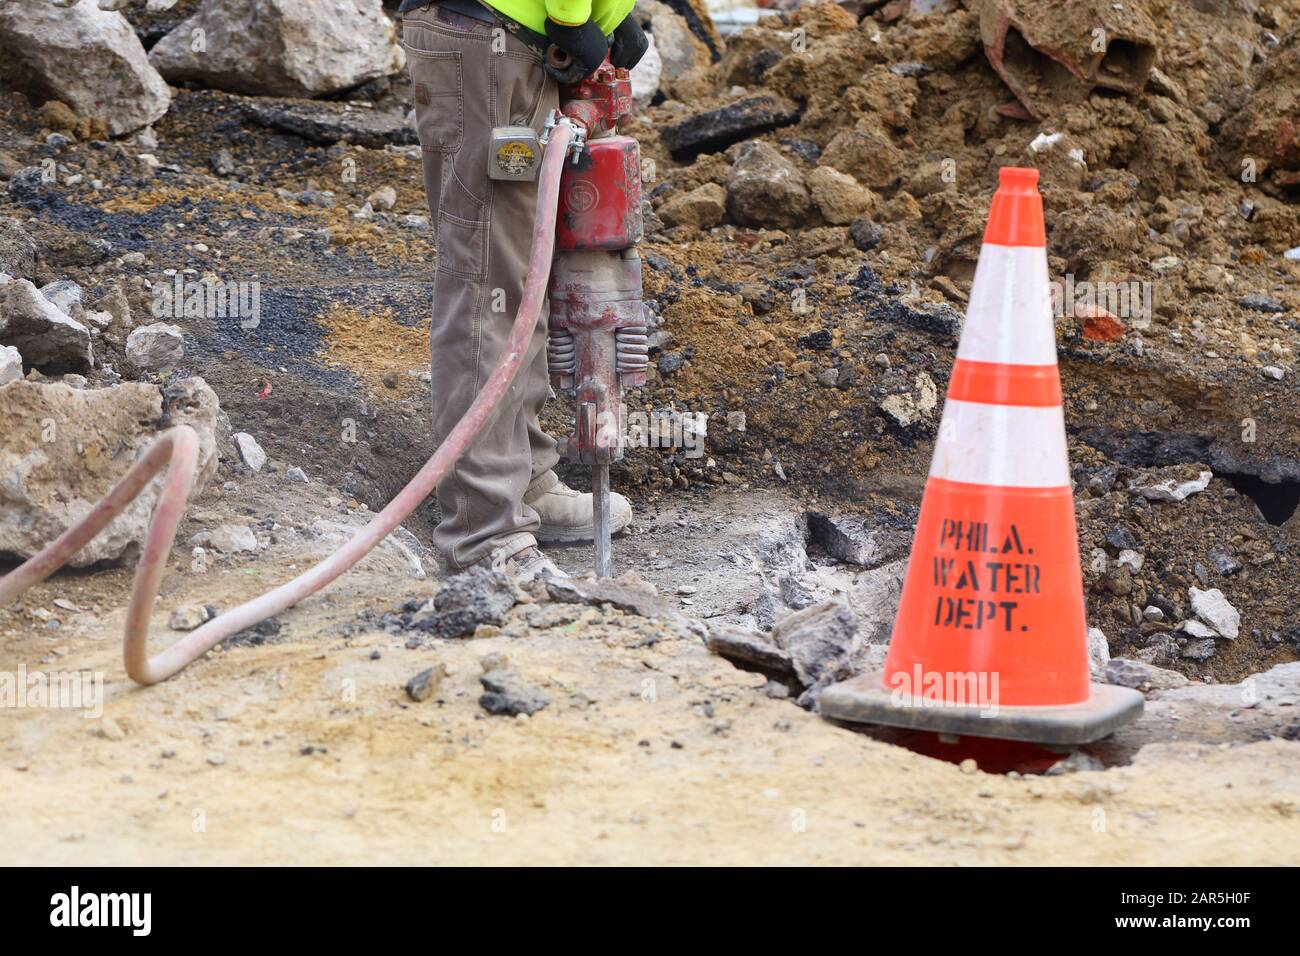 Ein Bauarbeiter des Wasserministeriums von Philadelphia betreibt einen Presslufthammer, um eine Straße zu öffnen, um eine Wasserleitung zu reparieren. Stockfoto